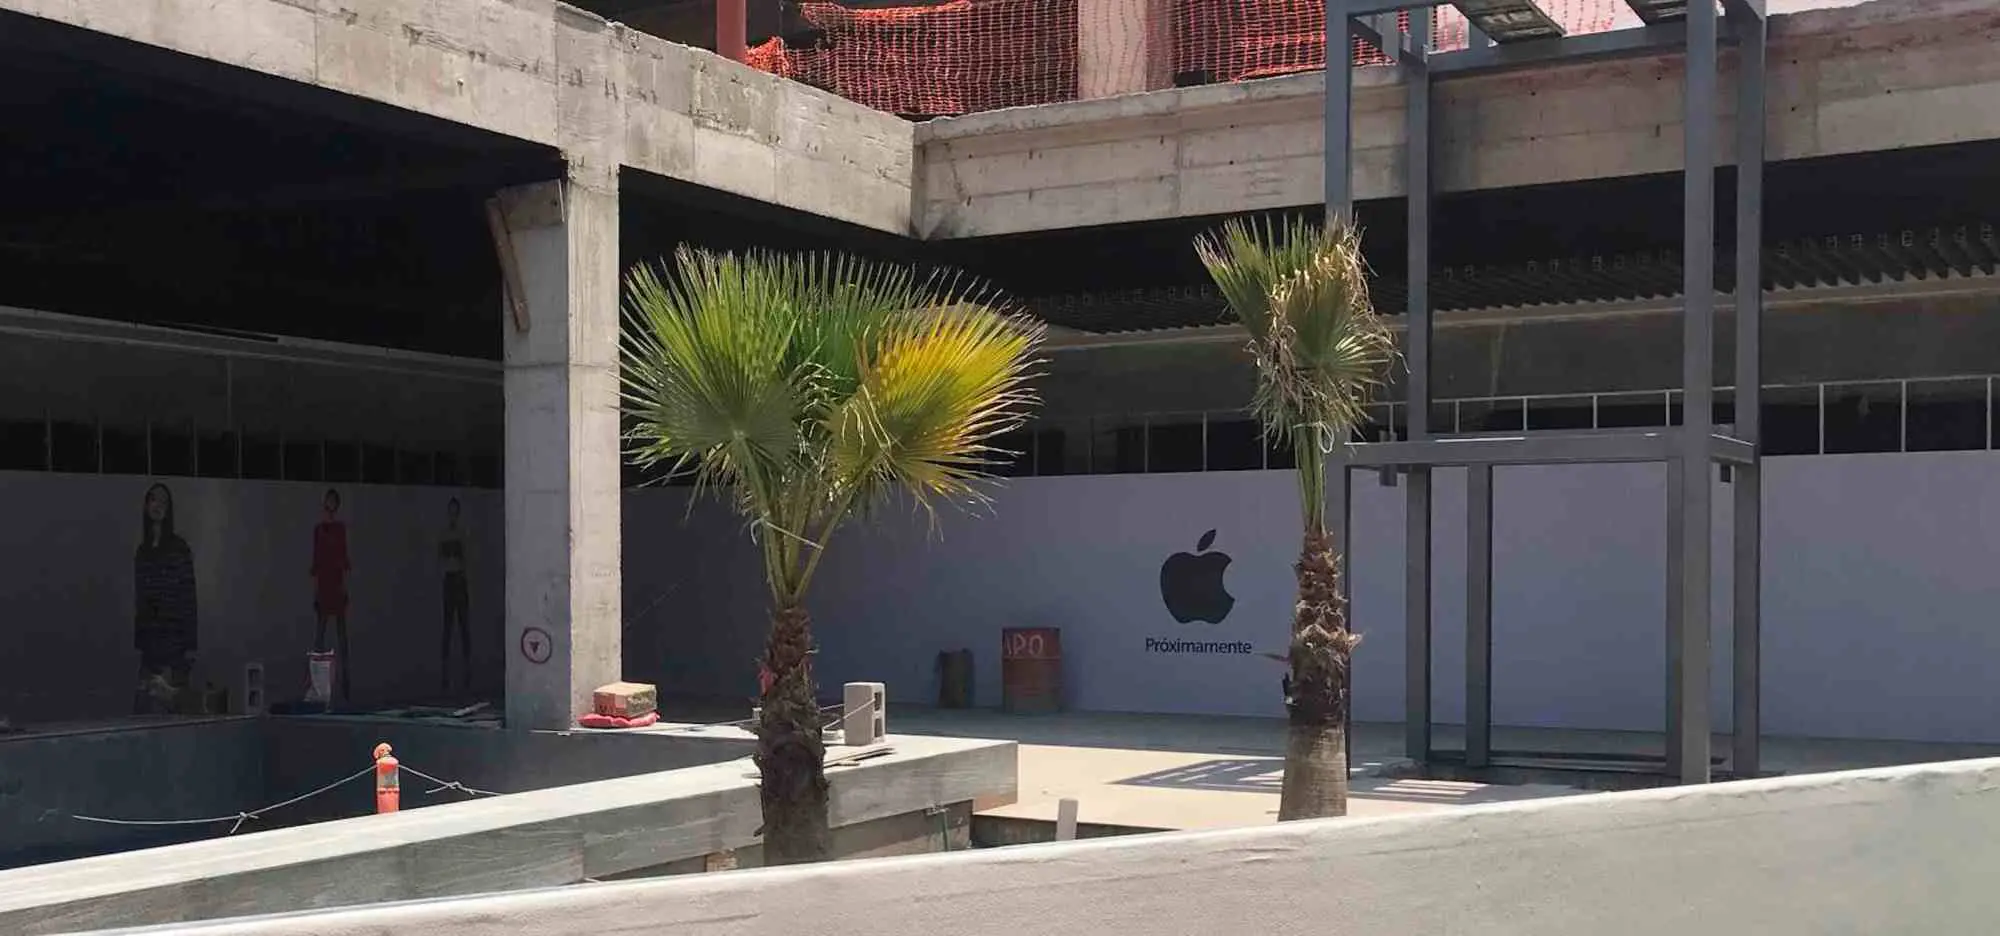 Apple abrirá tienda en San Luis Potosí